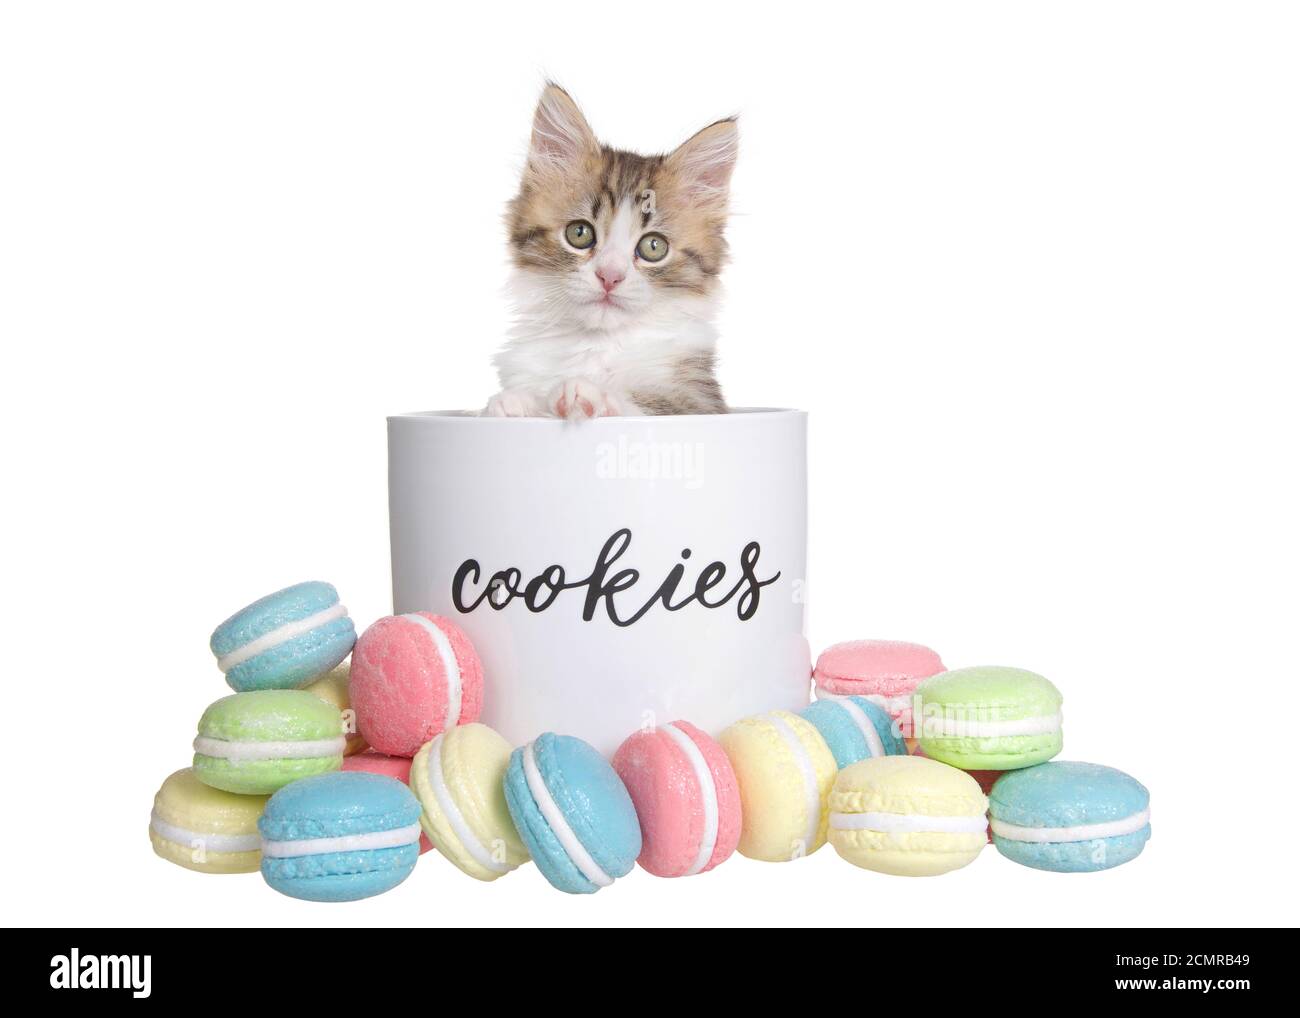 Adorable petit chaton qui sort d'un pot de biscuit en porcelaine étiqueté, avec des biscuits de macaron à l'extérieur du pot dans diverses couleurs et saveurs. Isolé sur wh Banque D'Images